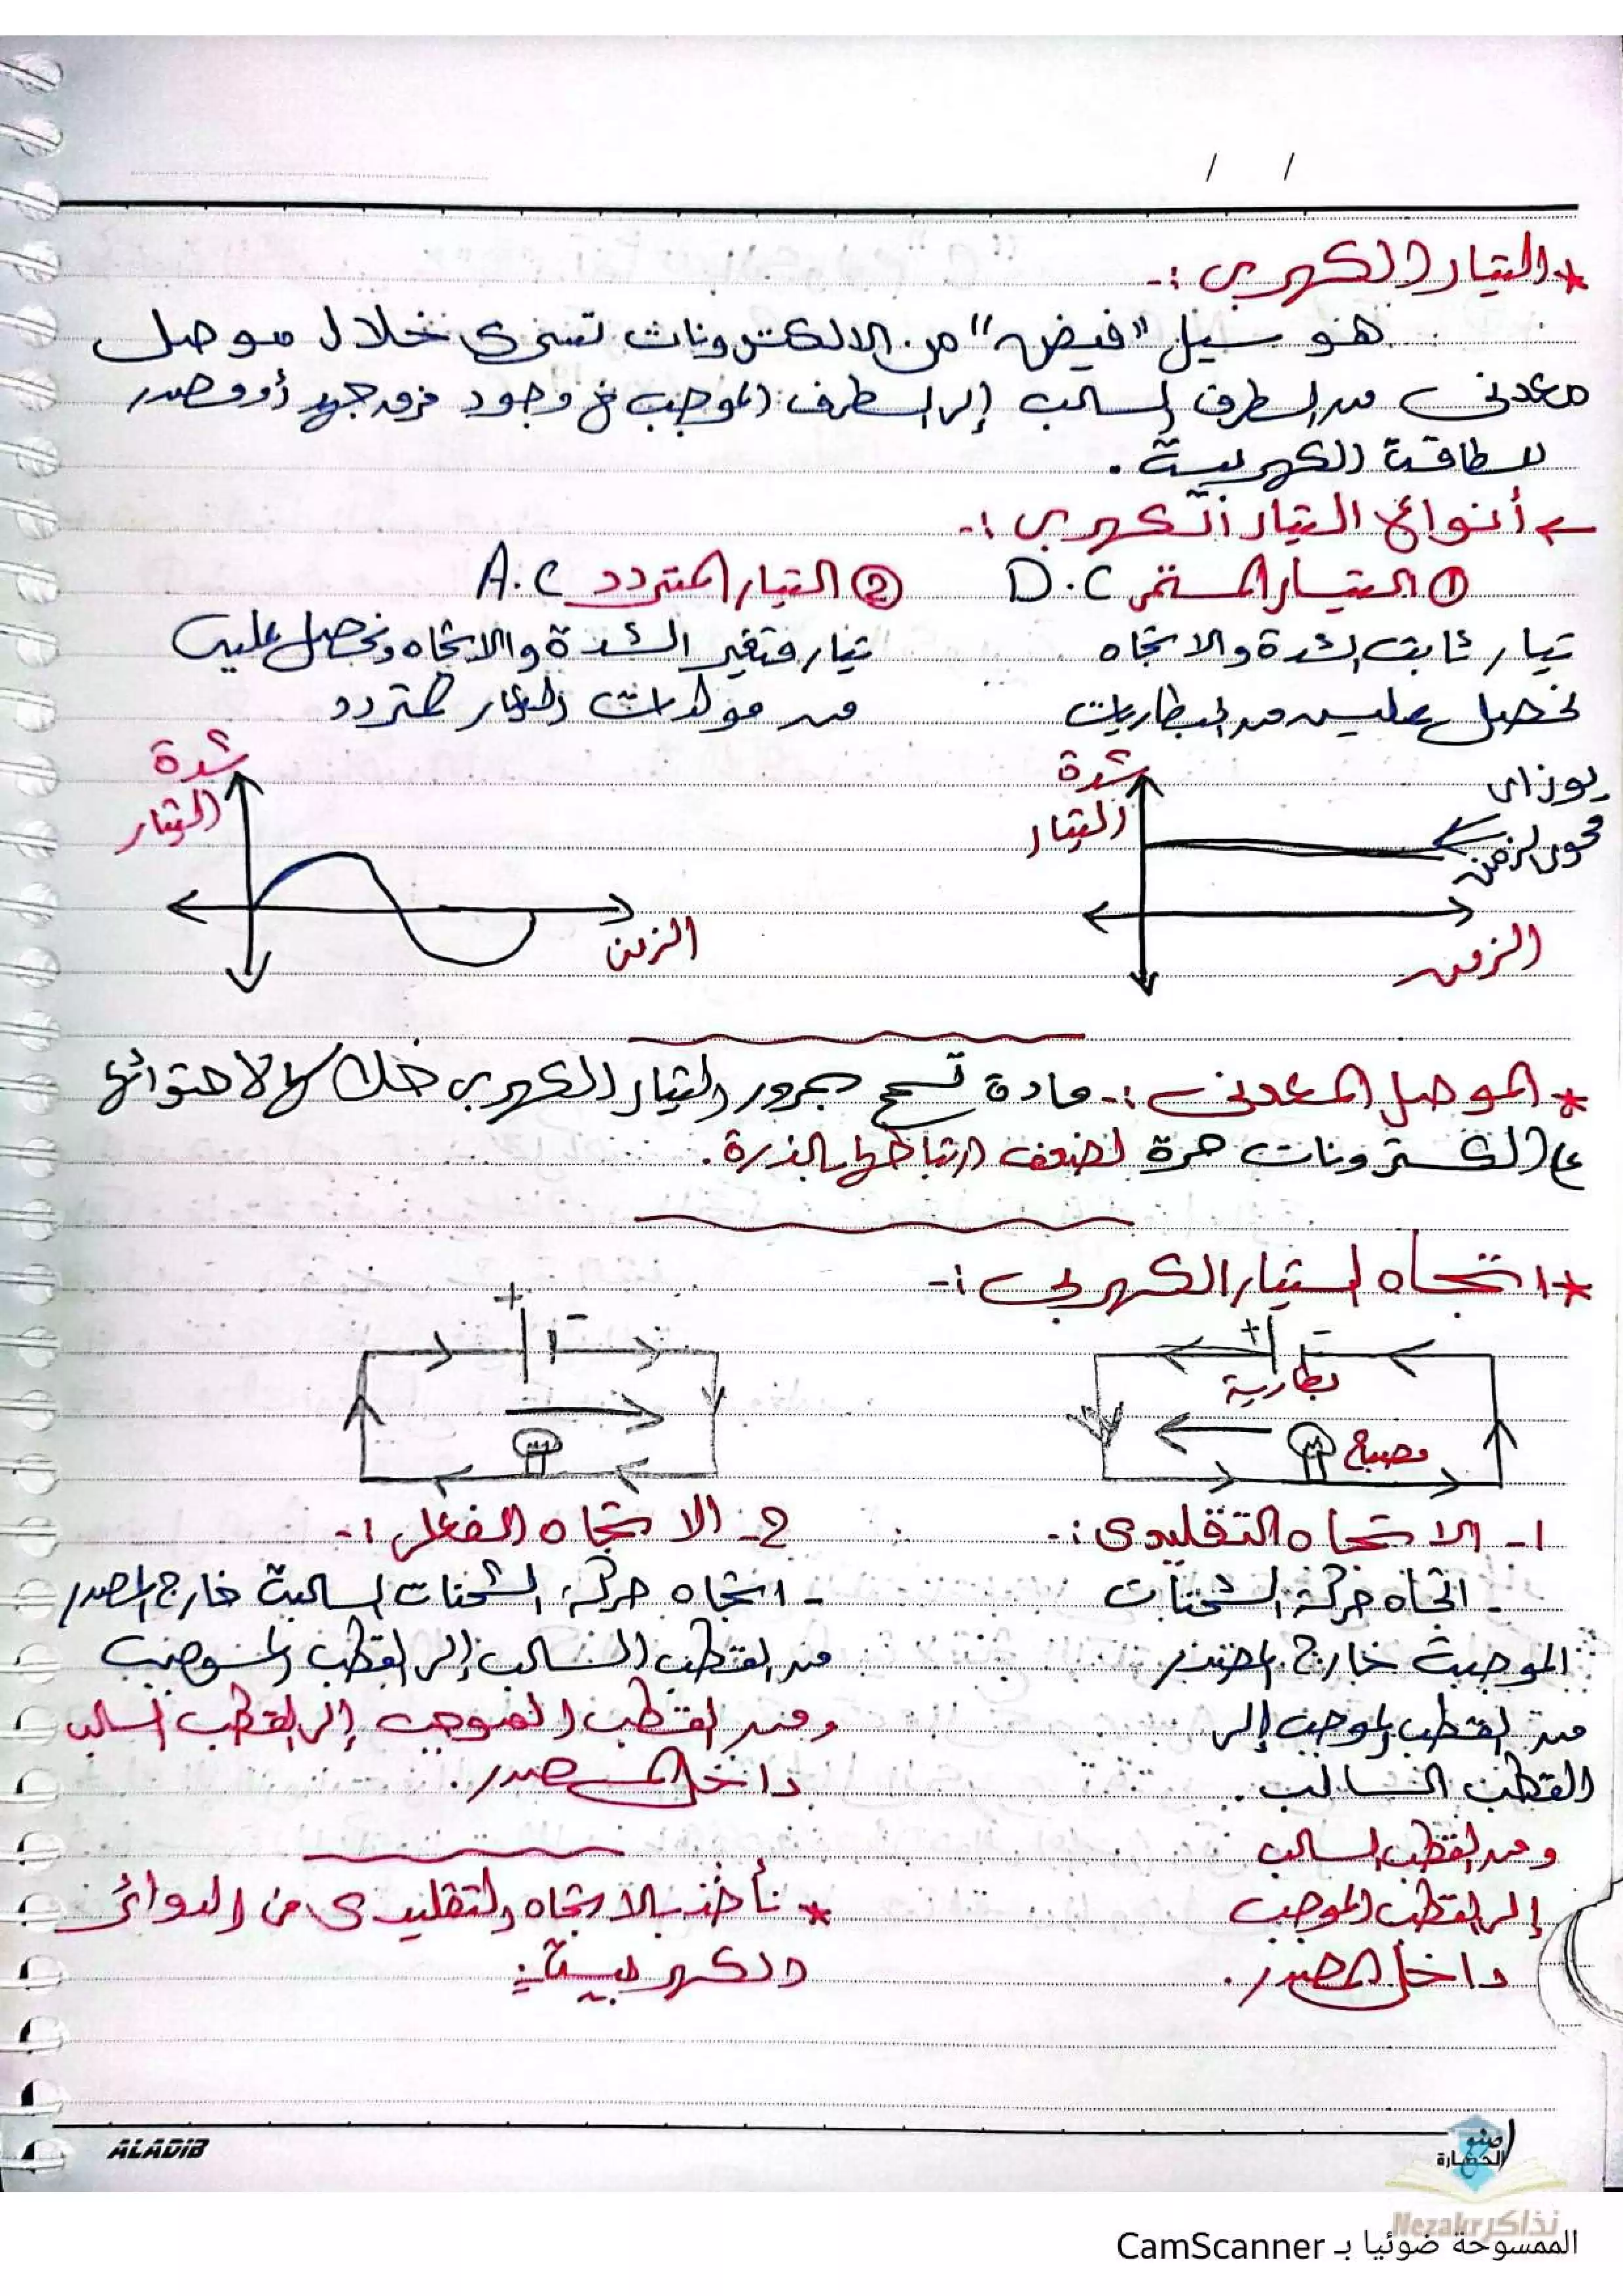 مذكرة وملاحظات فيزياء لشرح الباب الأول الفيزياء الكهربية للصف الثالث الثانوي